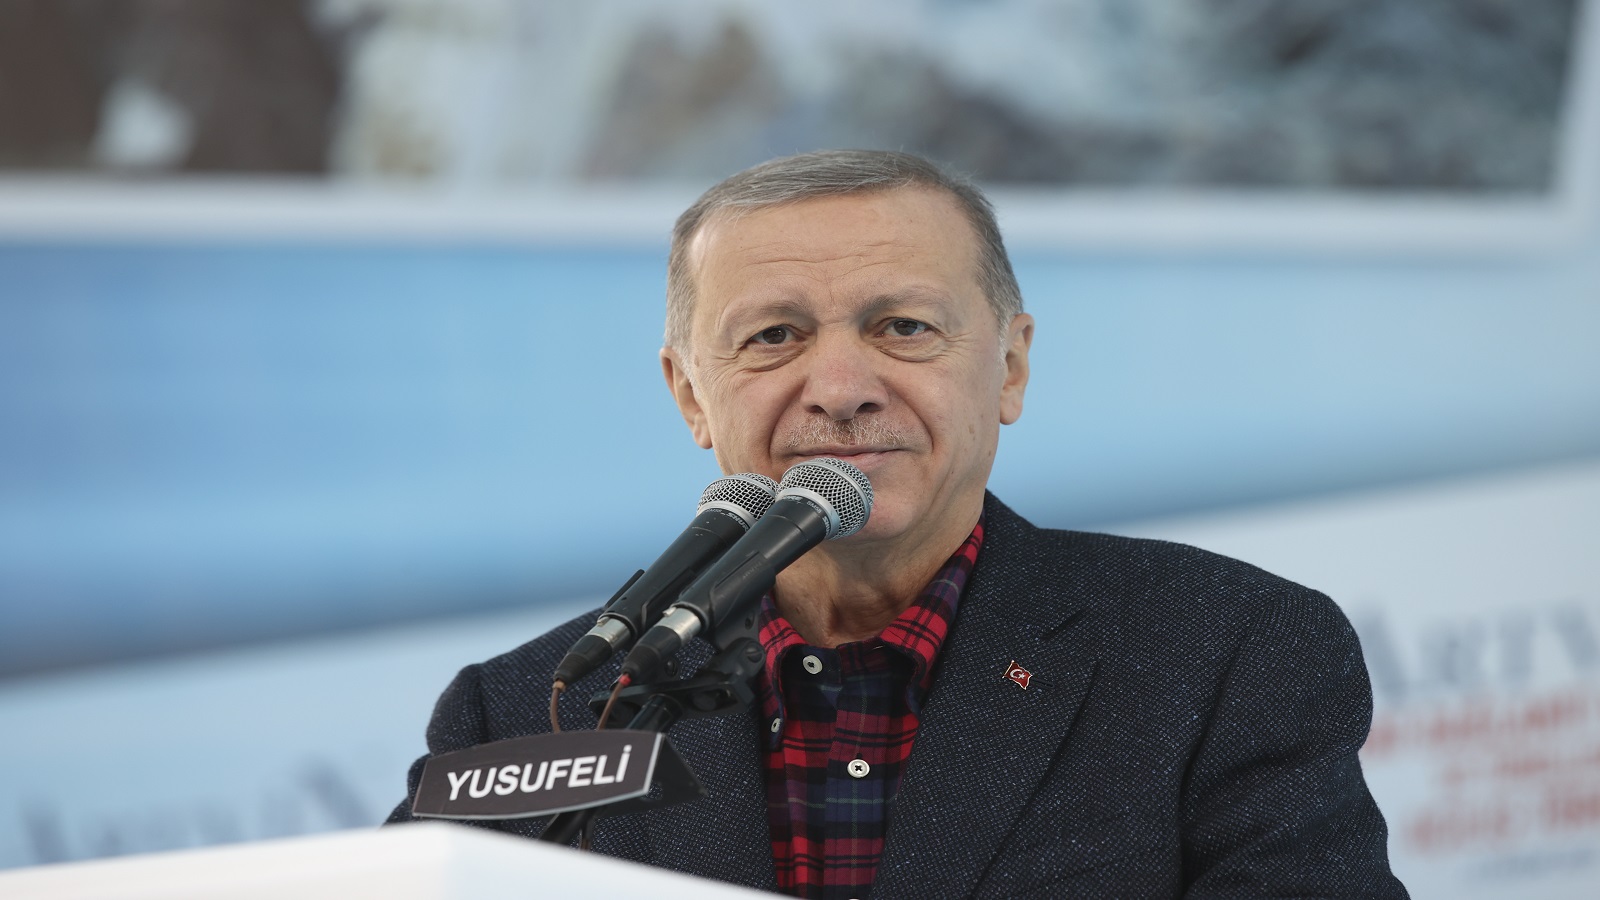 أردوغان يؤكد نية تركيا توسيع الخط الأمني شمال سوريا